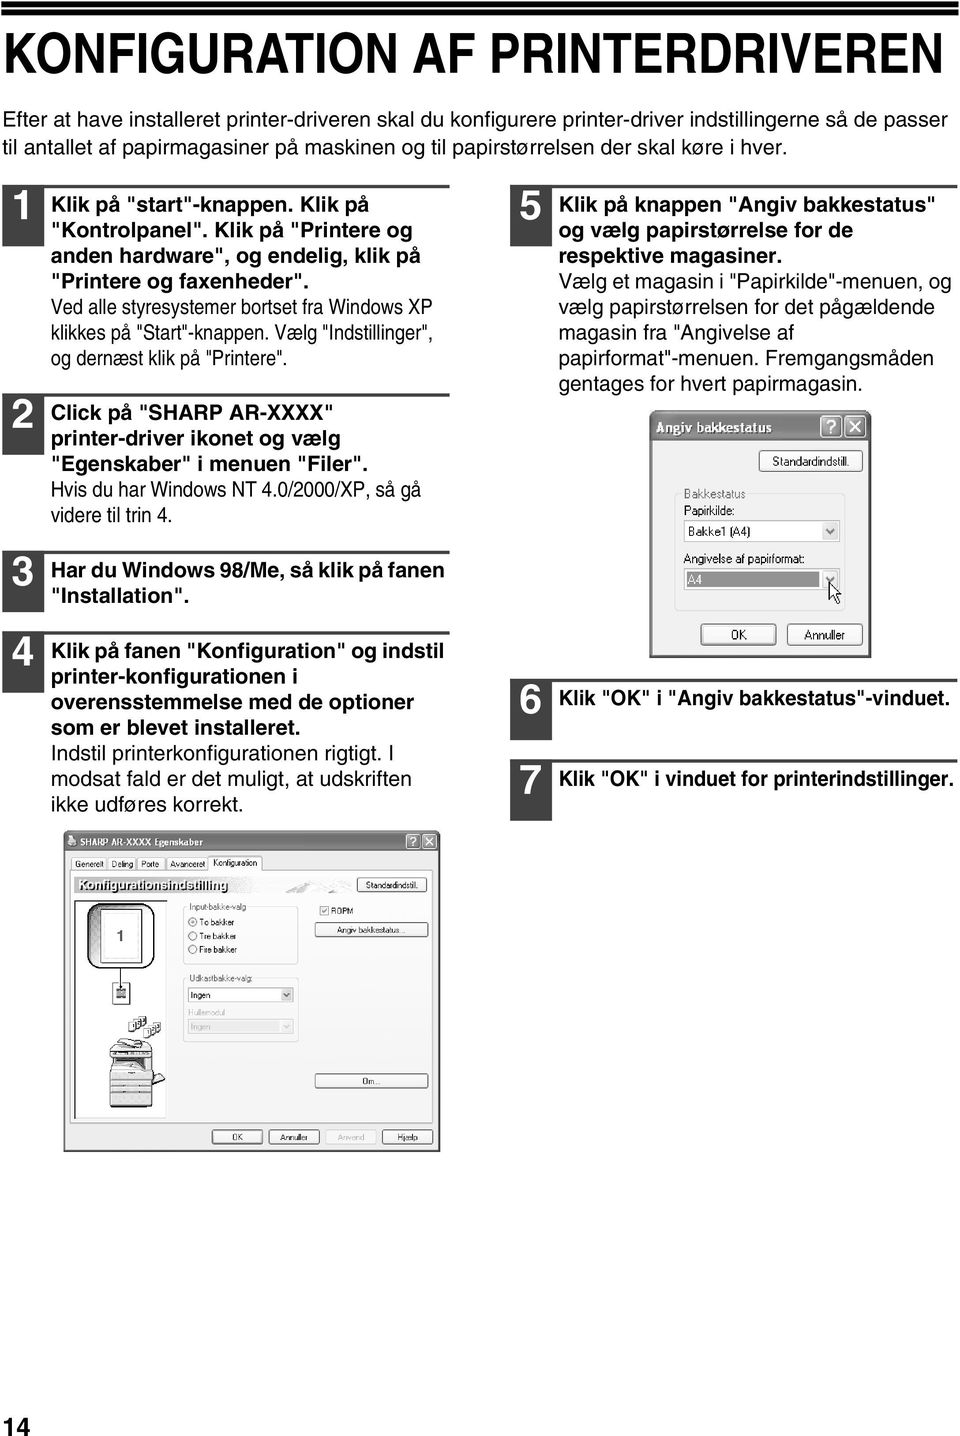 Ved alle styresystemer bortset fra Windows XP klikkes på "Start"-knappen. Vælg "Indstillinger", og dernæst klik på "Printere".